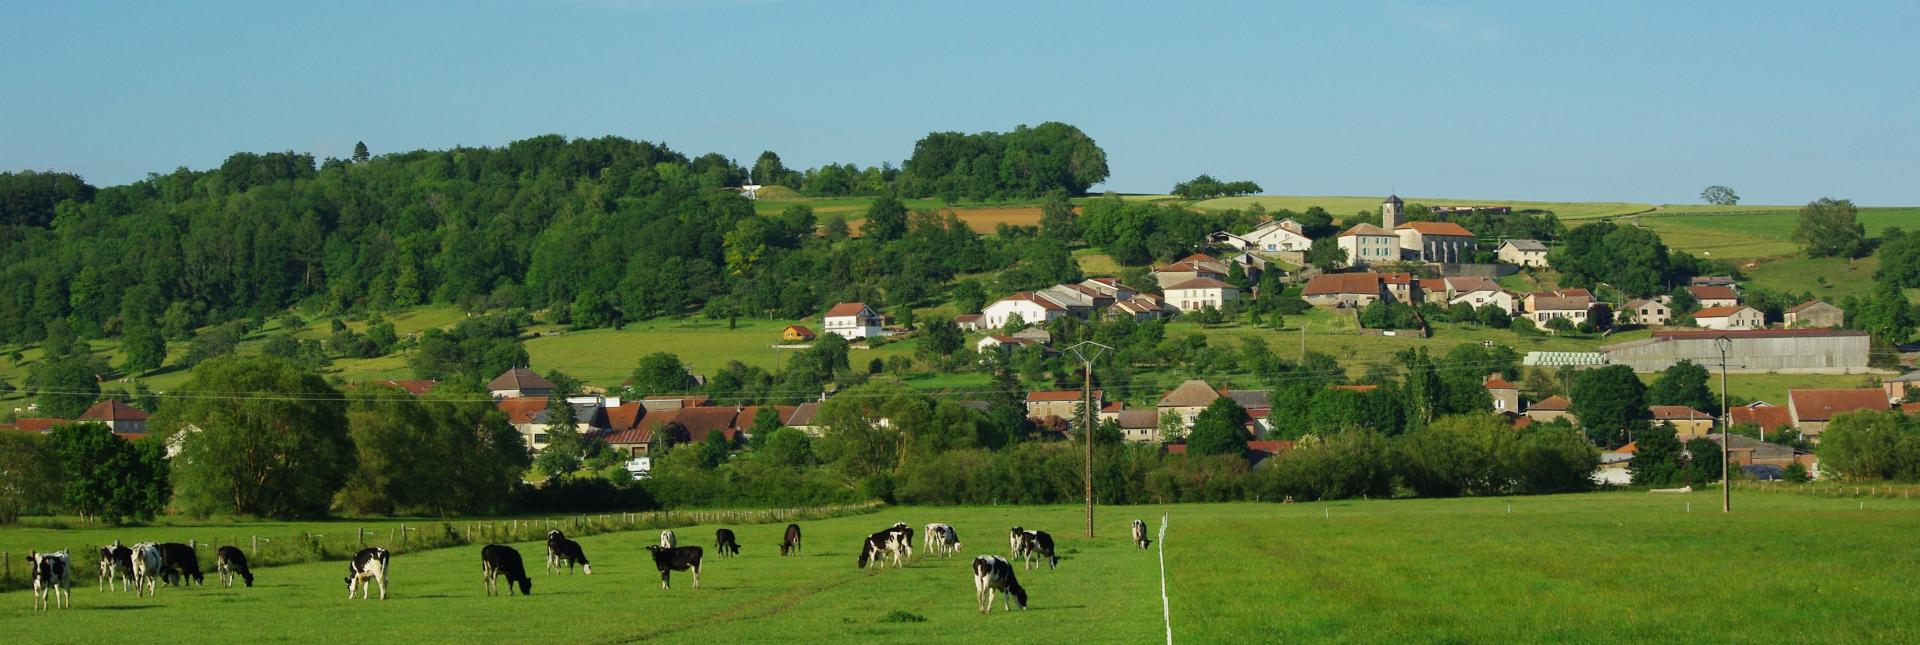 Removille, commune des Vosges